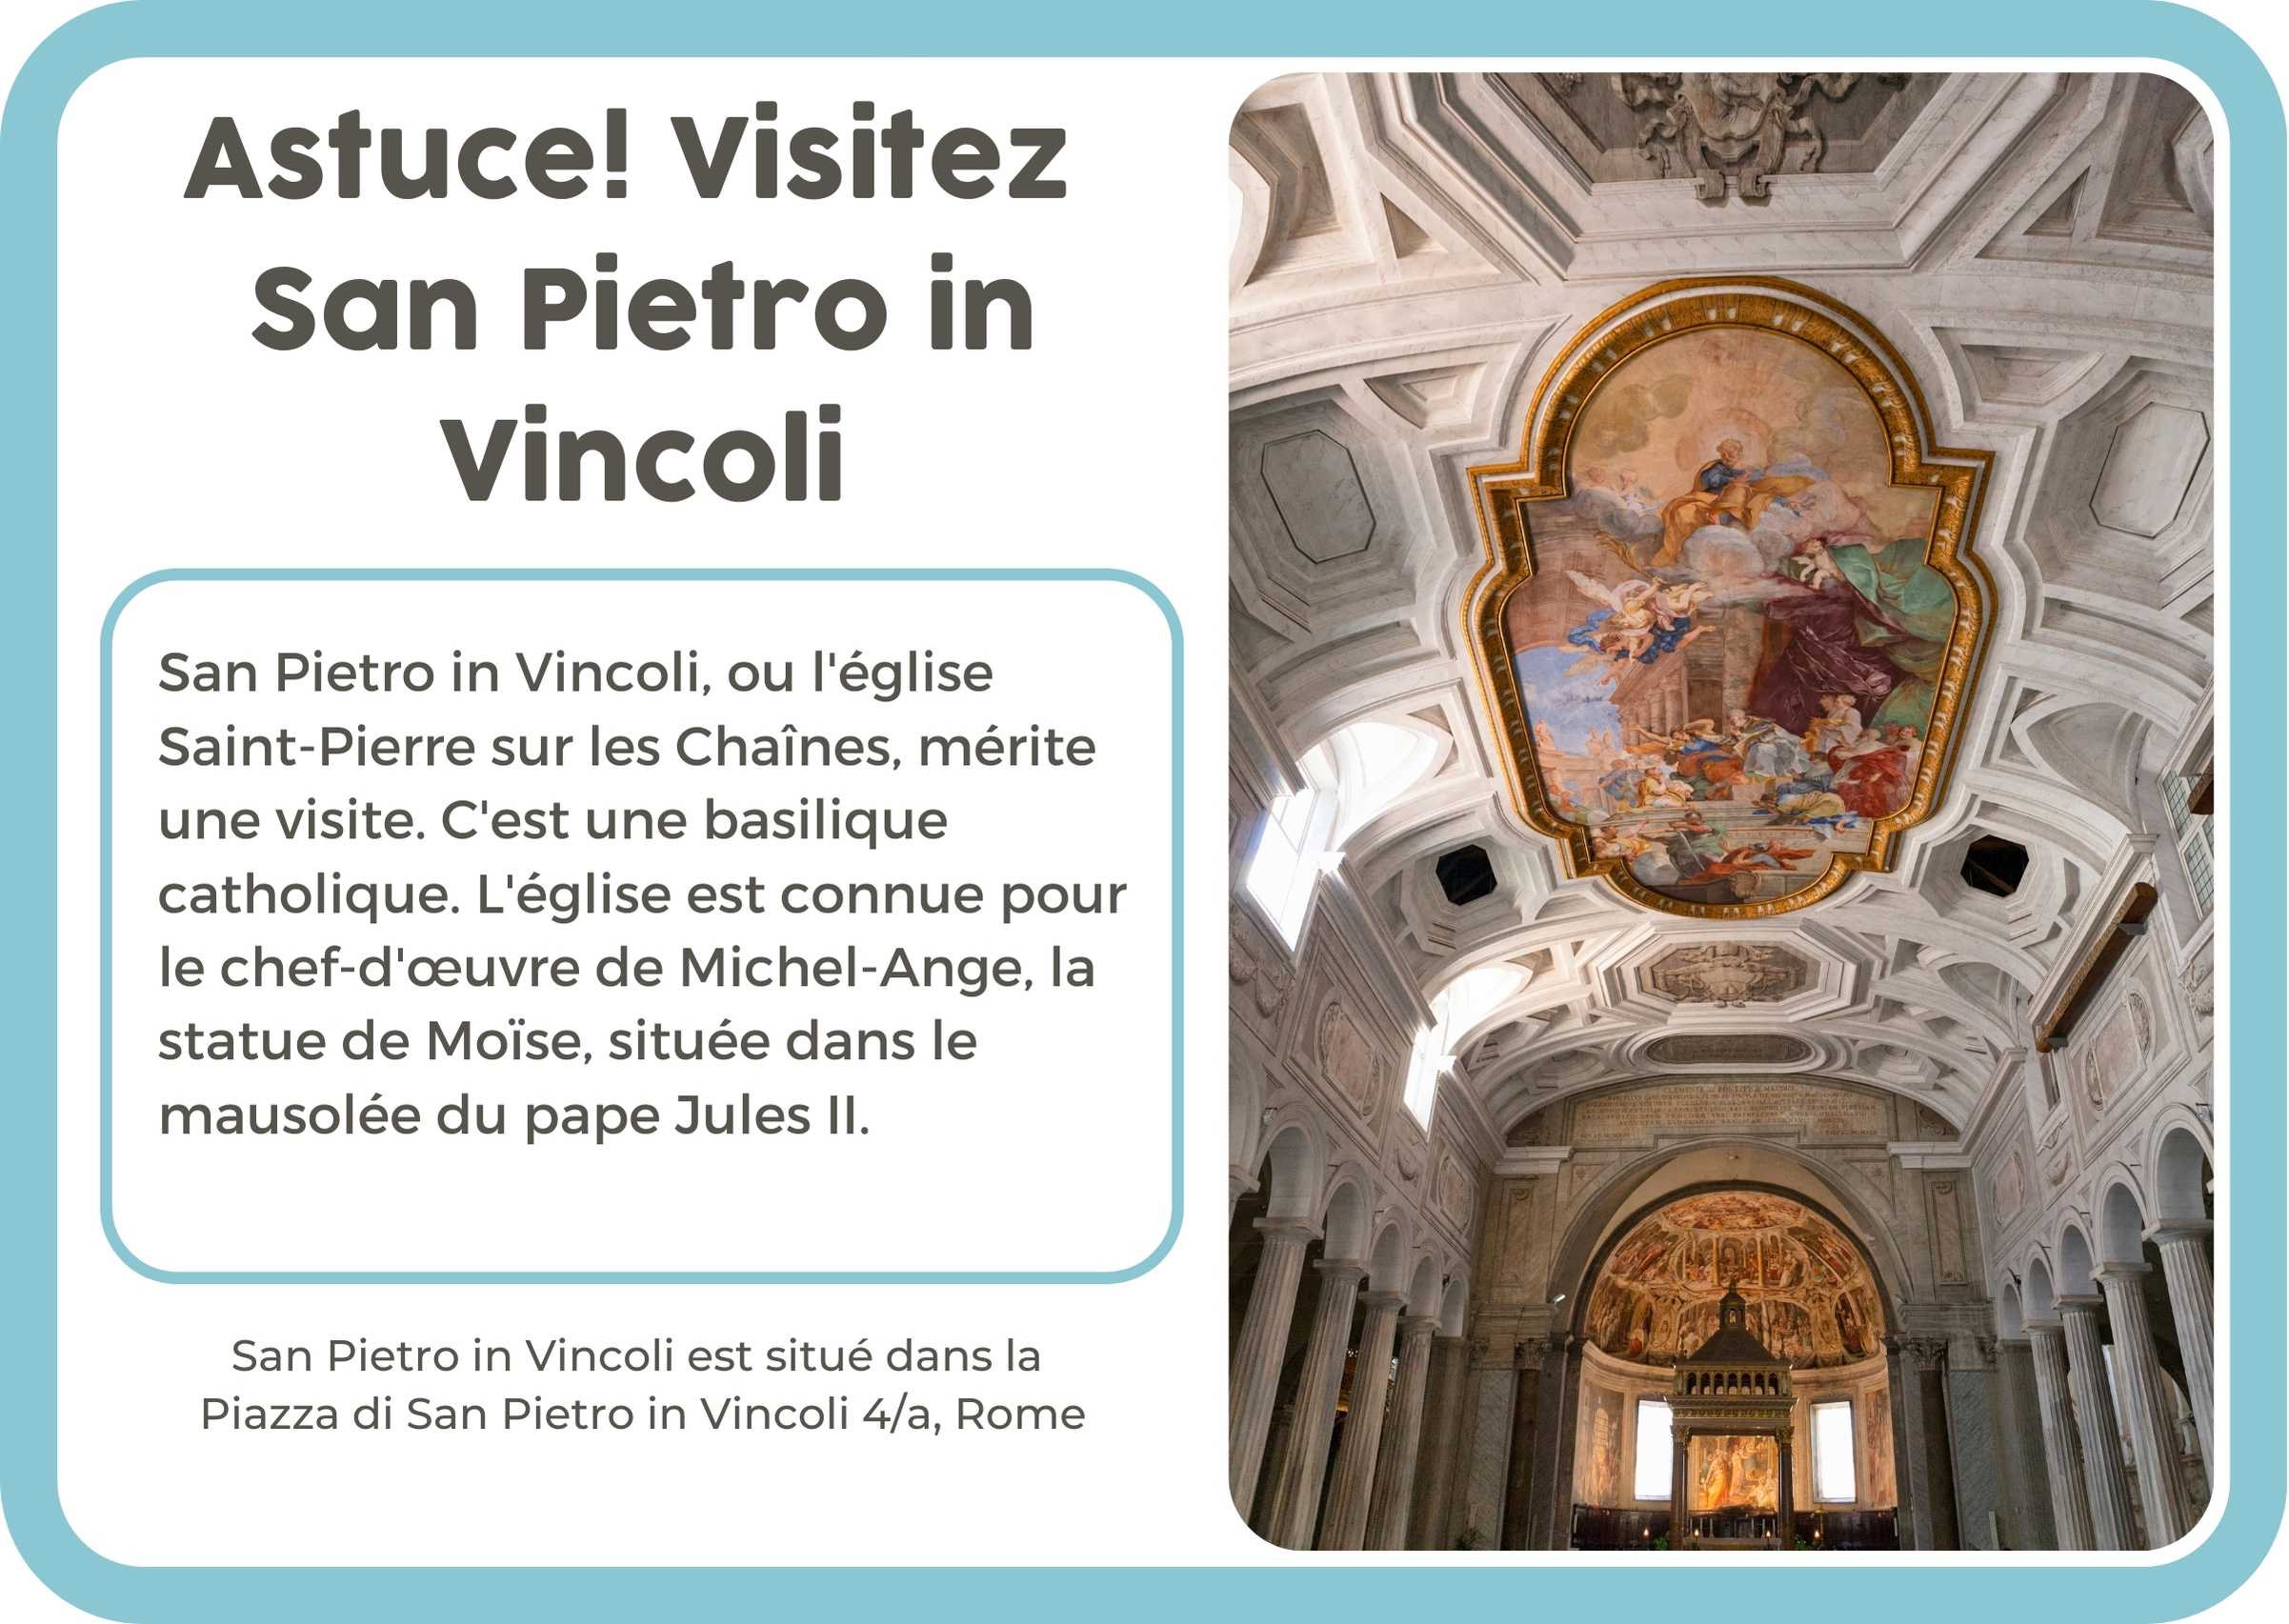 (Frans) San Pietro in Vincoli